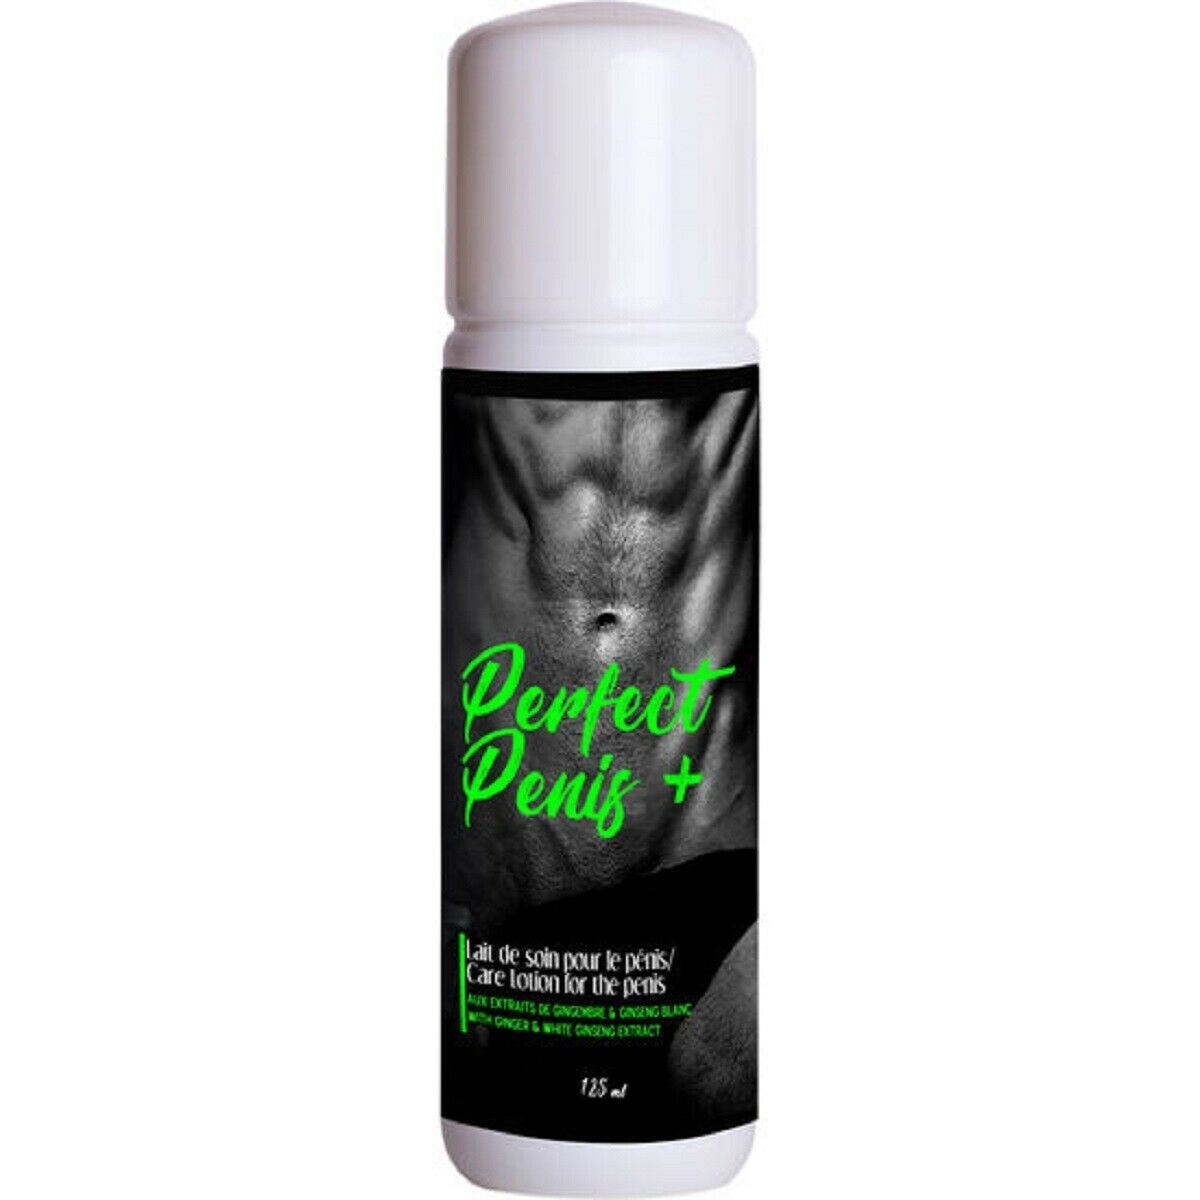 Perfect Penis + Cream Penile Massage Gel for Men 125ml